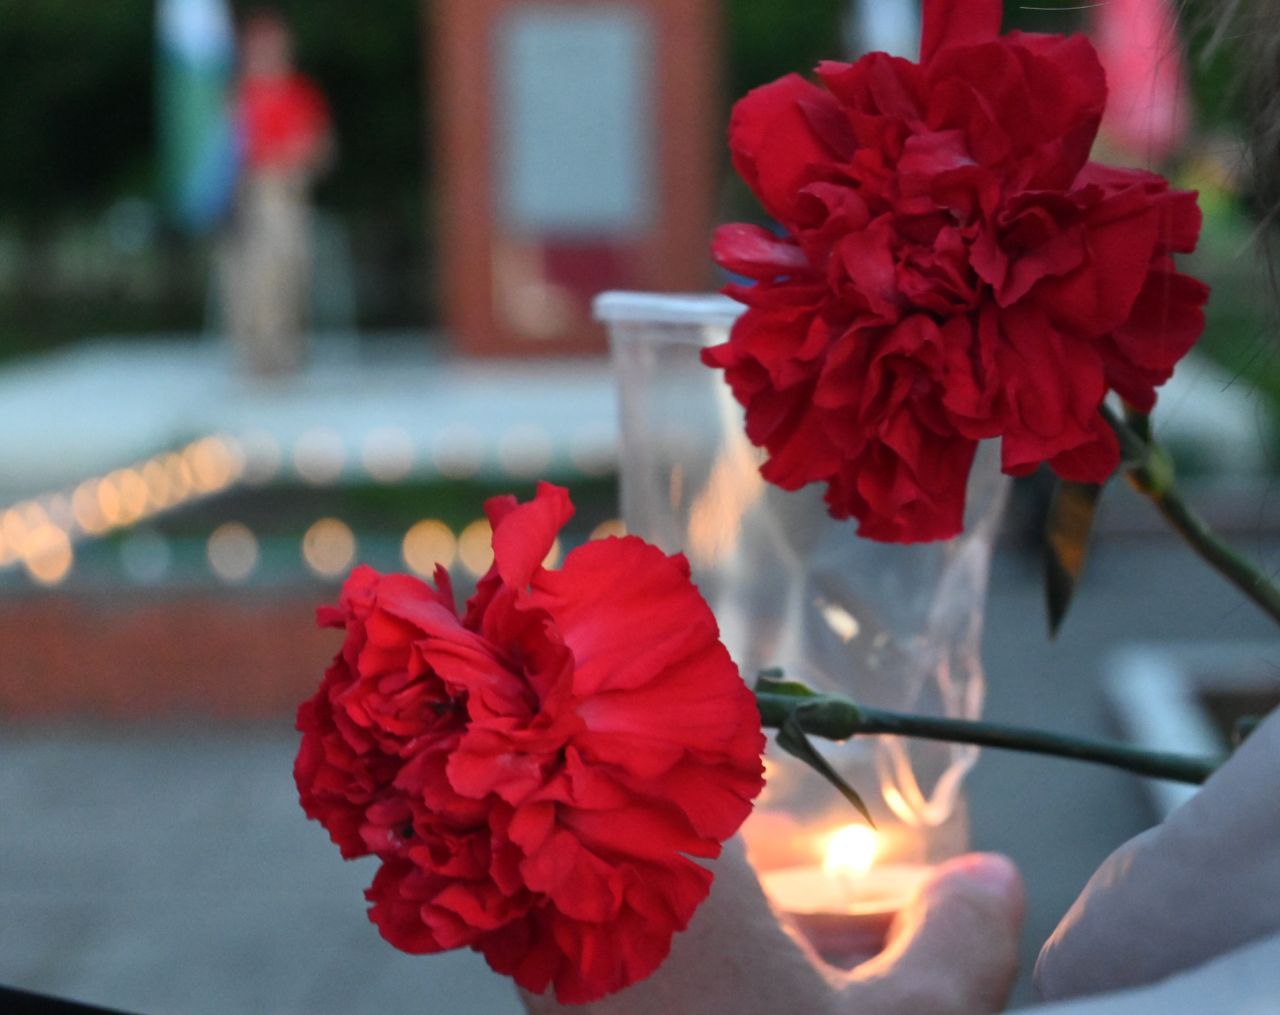 22 июня - одна из самых трагических дат в истории нашей страны - День памяти и скорби..